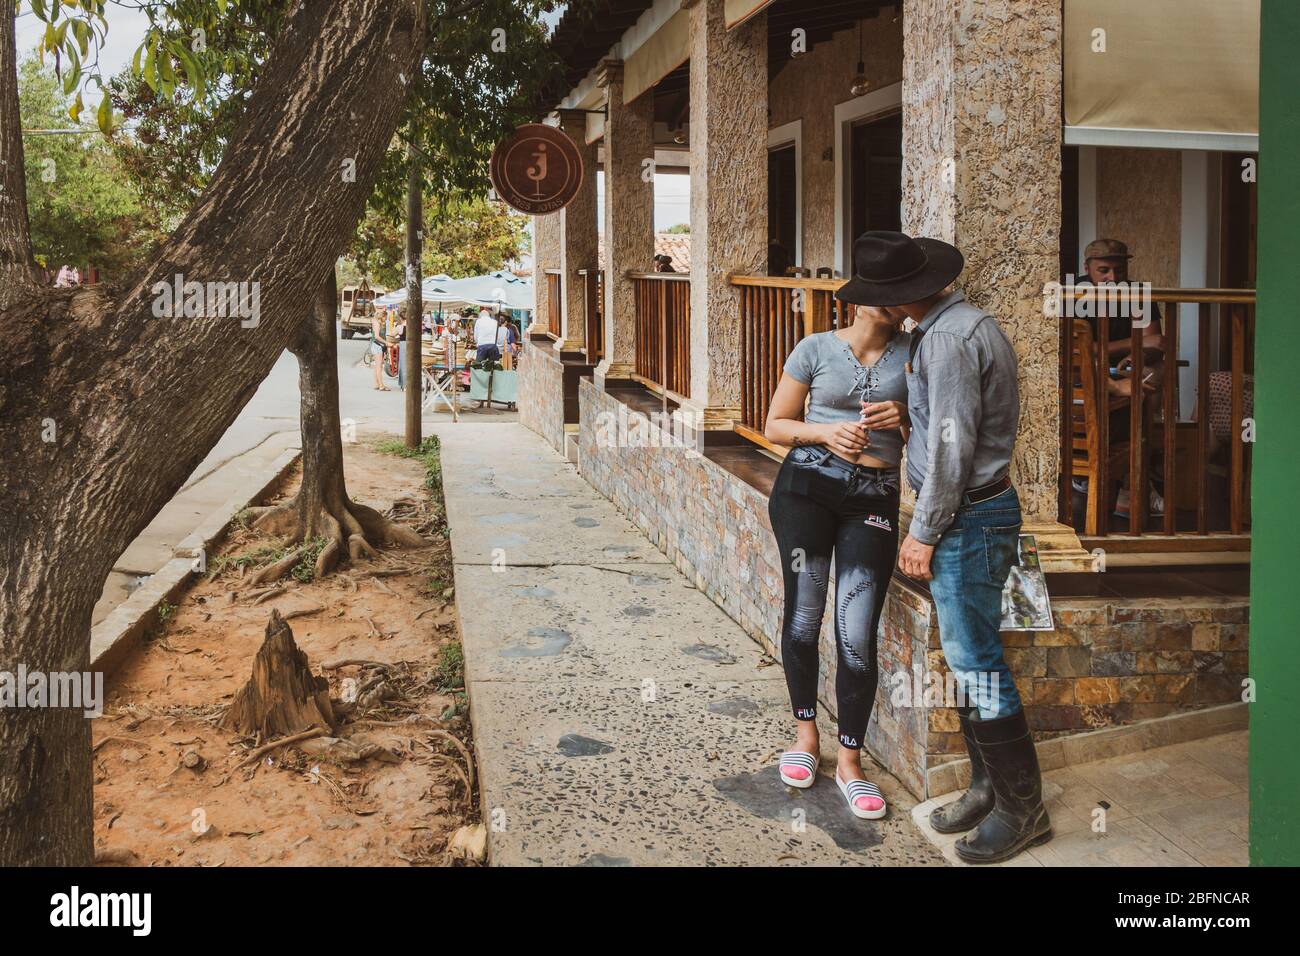 Cuban local couple kissing outside 3J's cafe (Tres Jotas), Vinales, Cuba Stock Photo